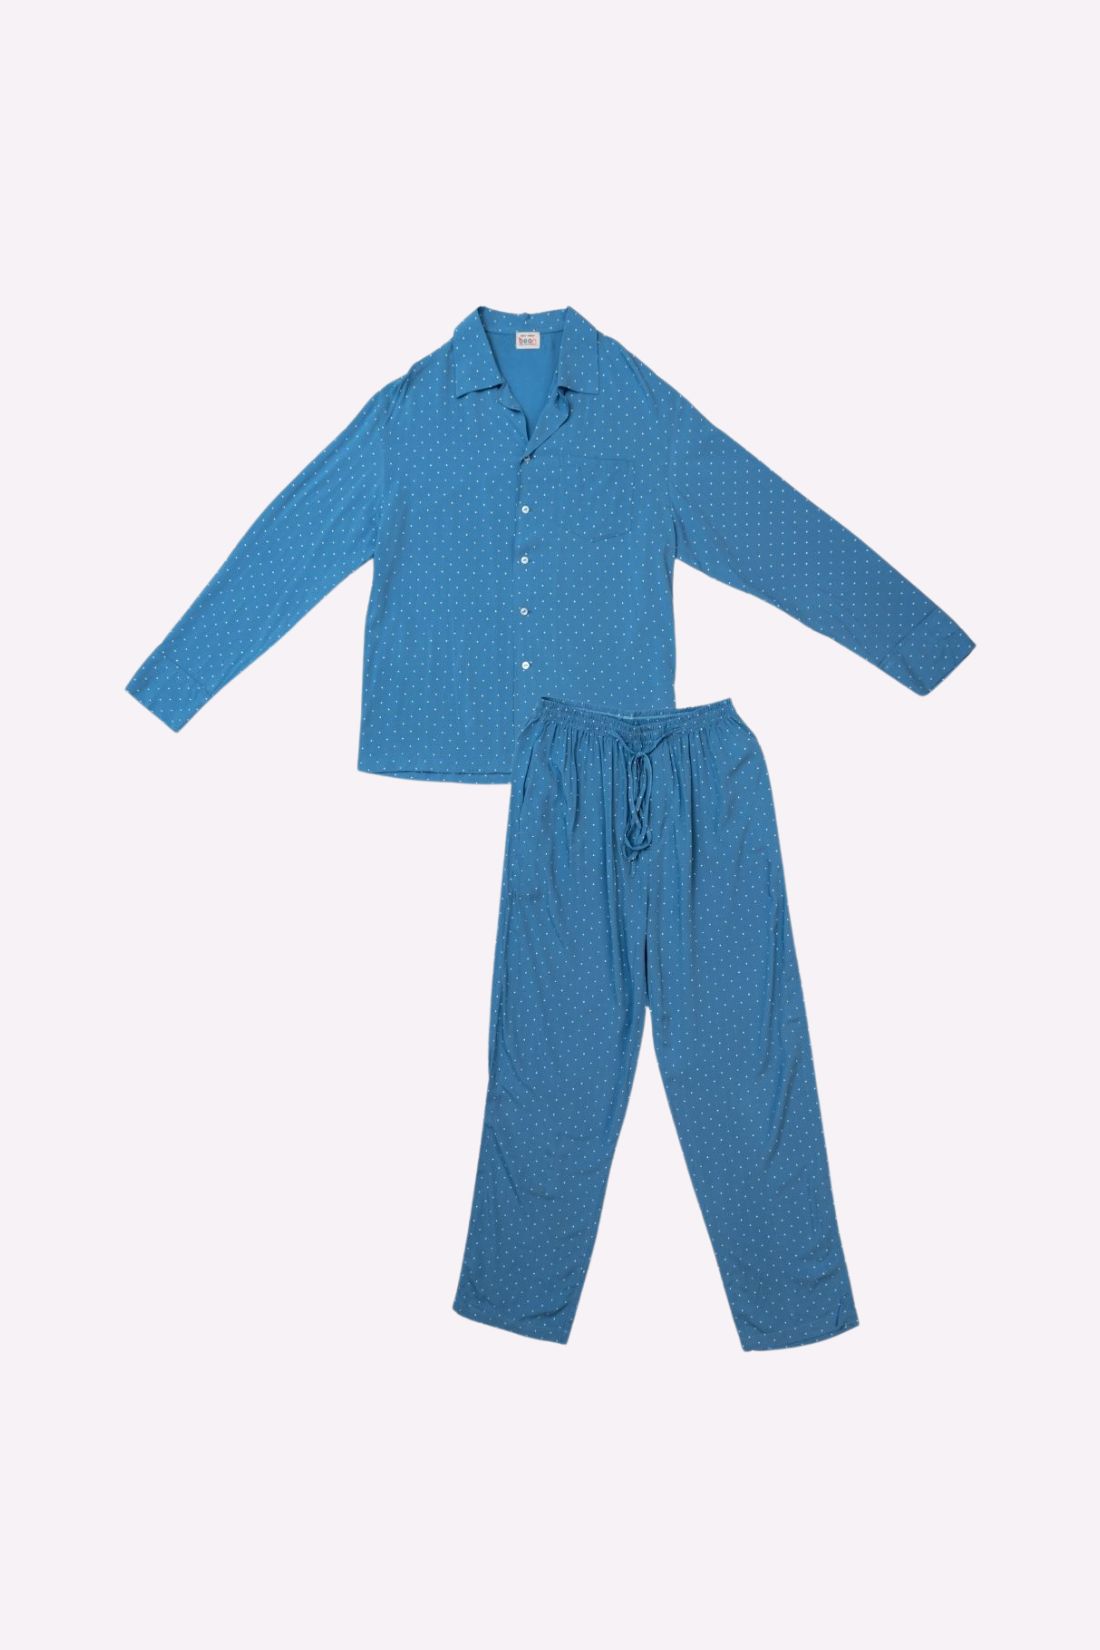 Polka Dot Pajama Set for Dad